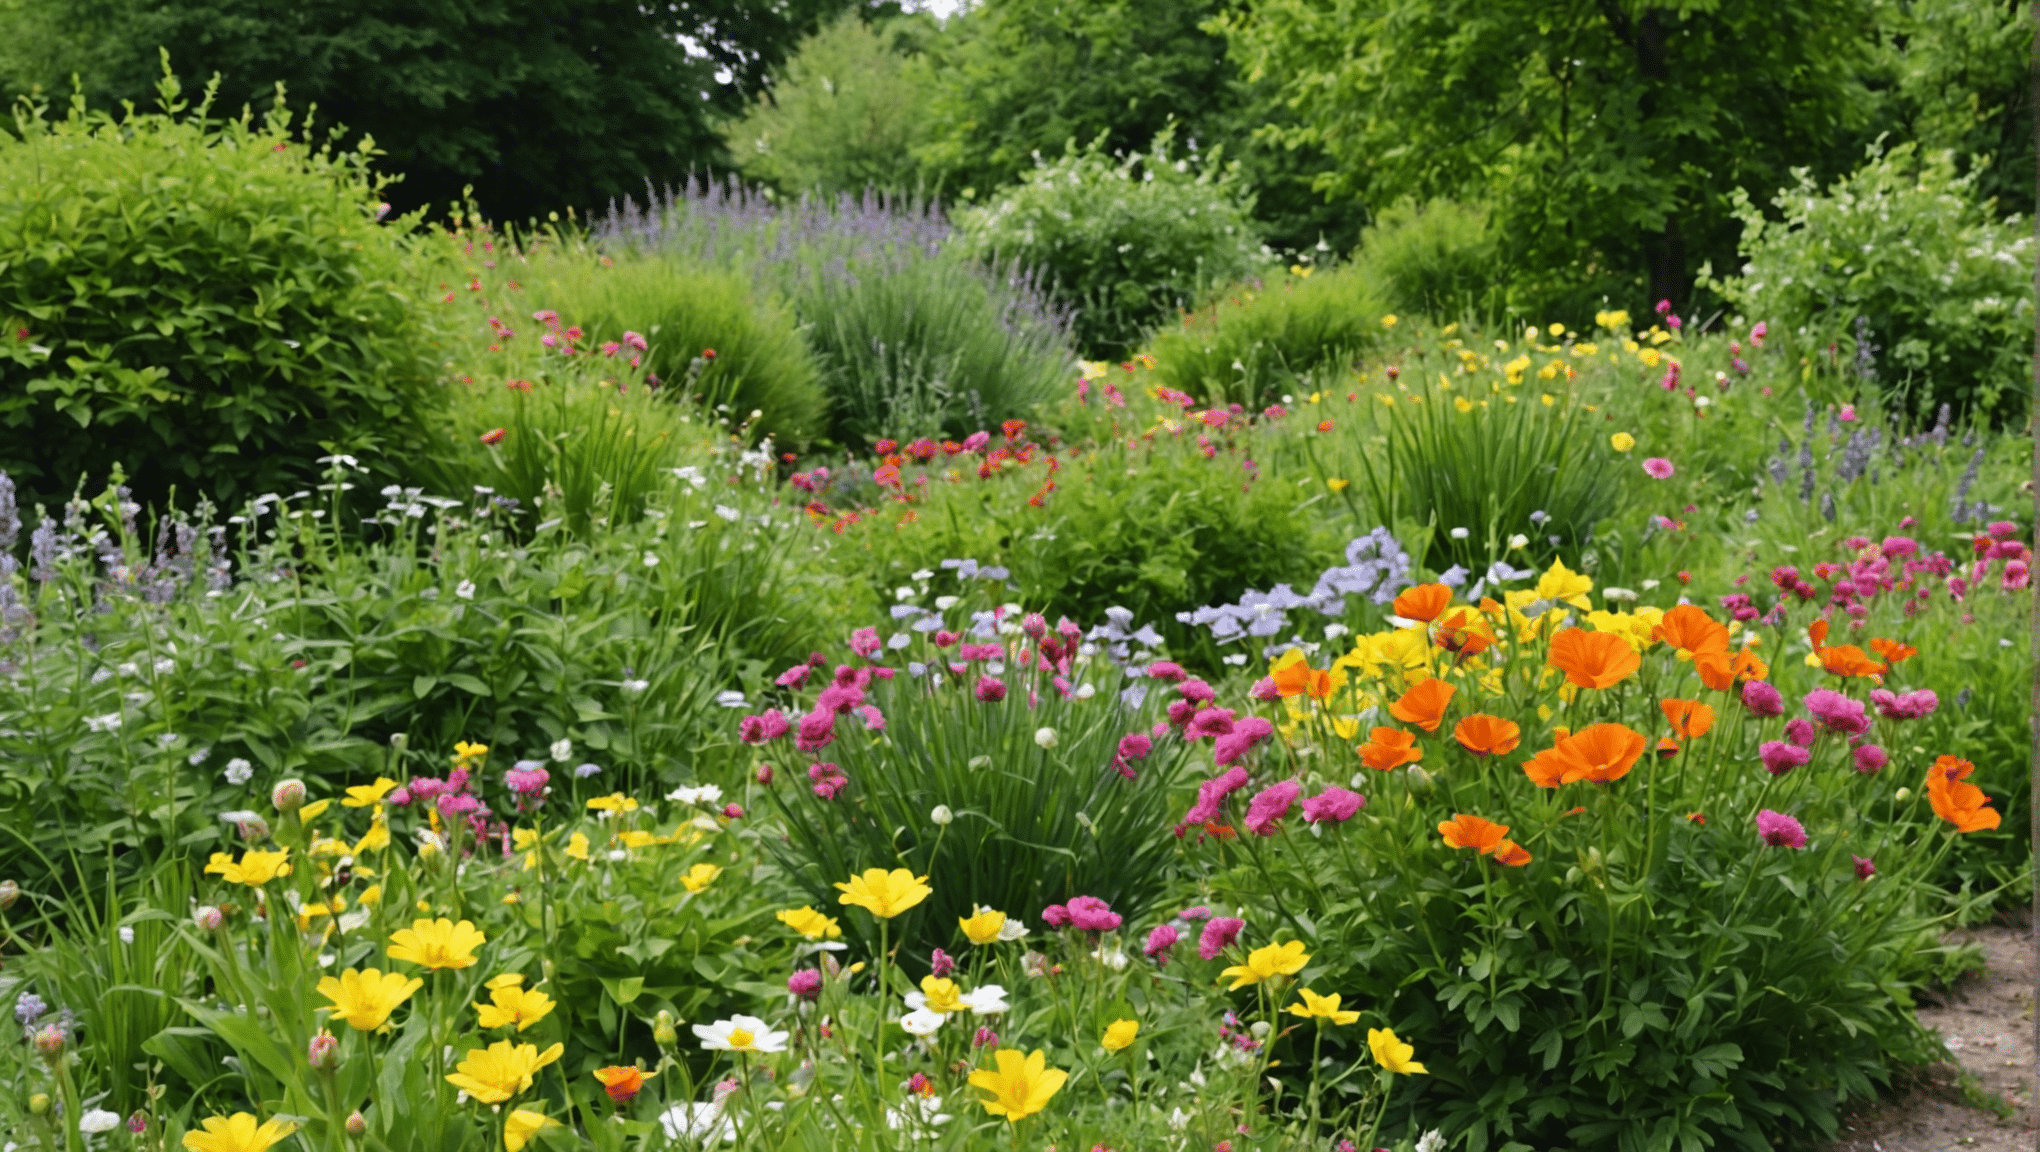 découvrez comment créer un jardin de fleurs sauvages et apporter beauté et biodiversité à votre environnement avec nos conseils pratiques.